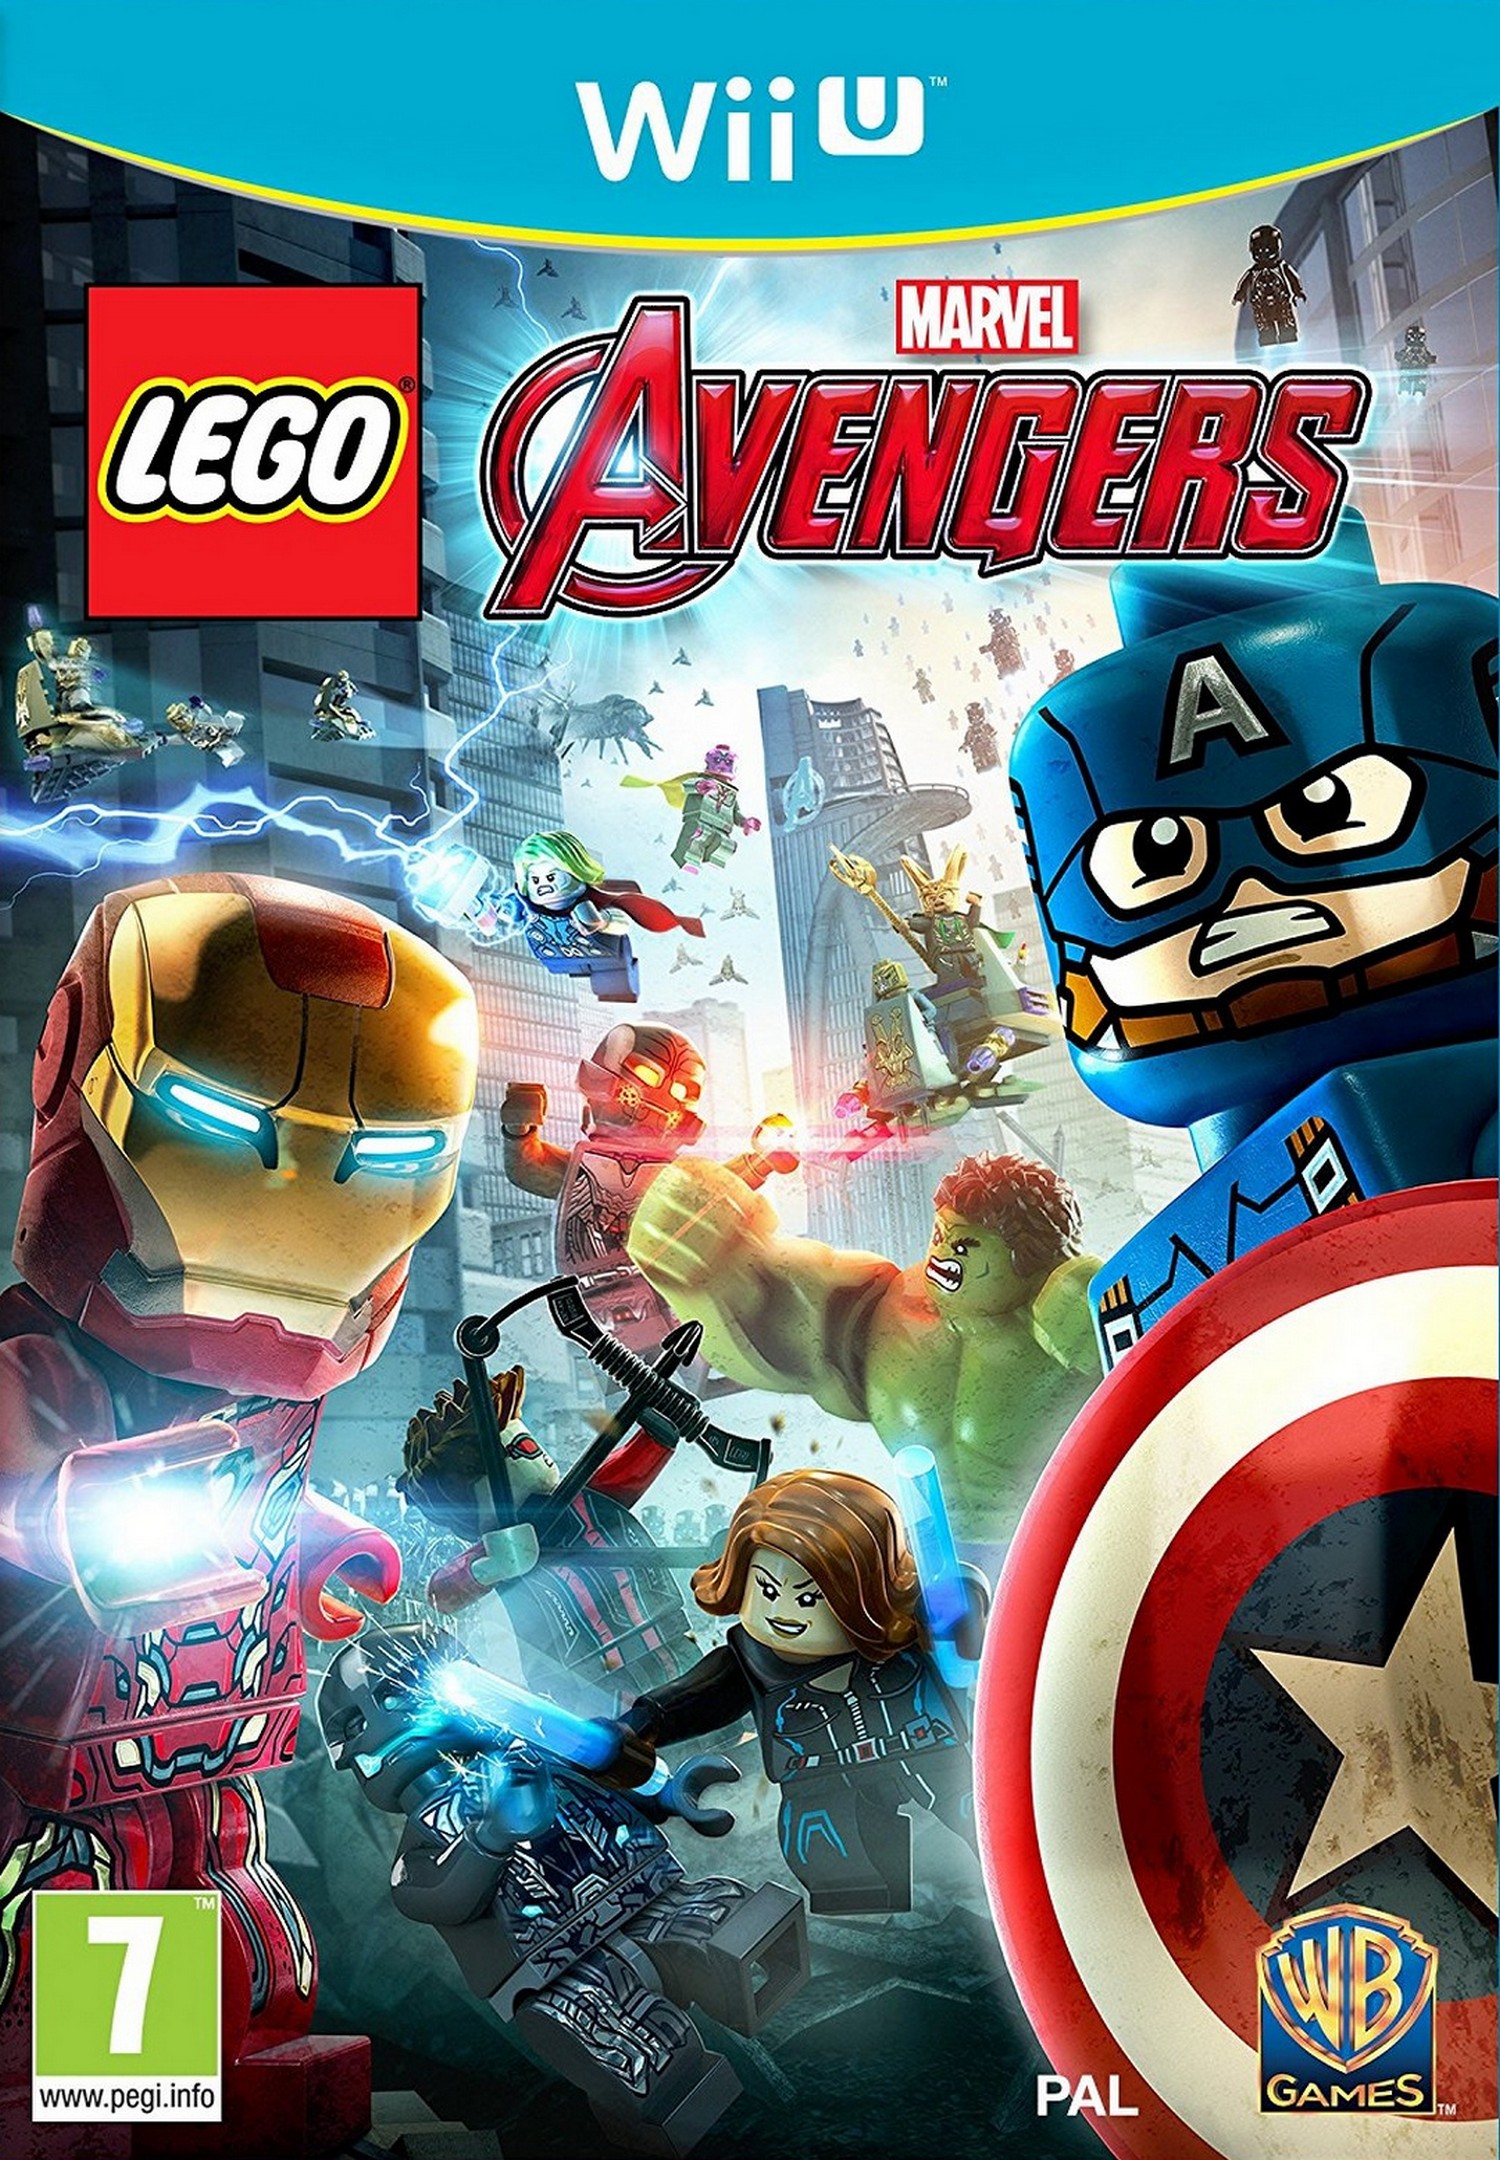 Wii U LEGO Marvel Avengers